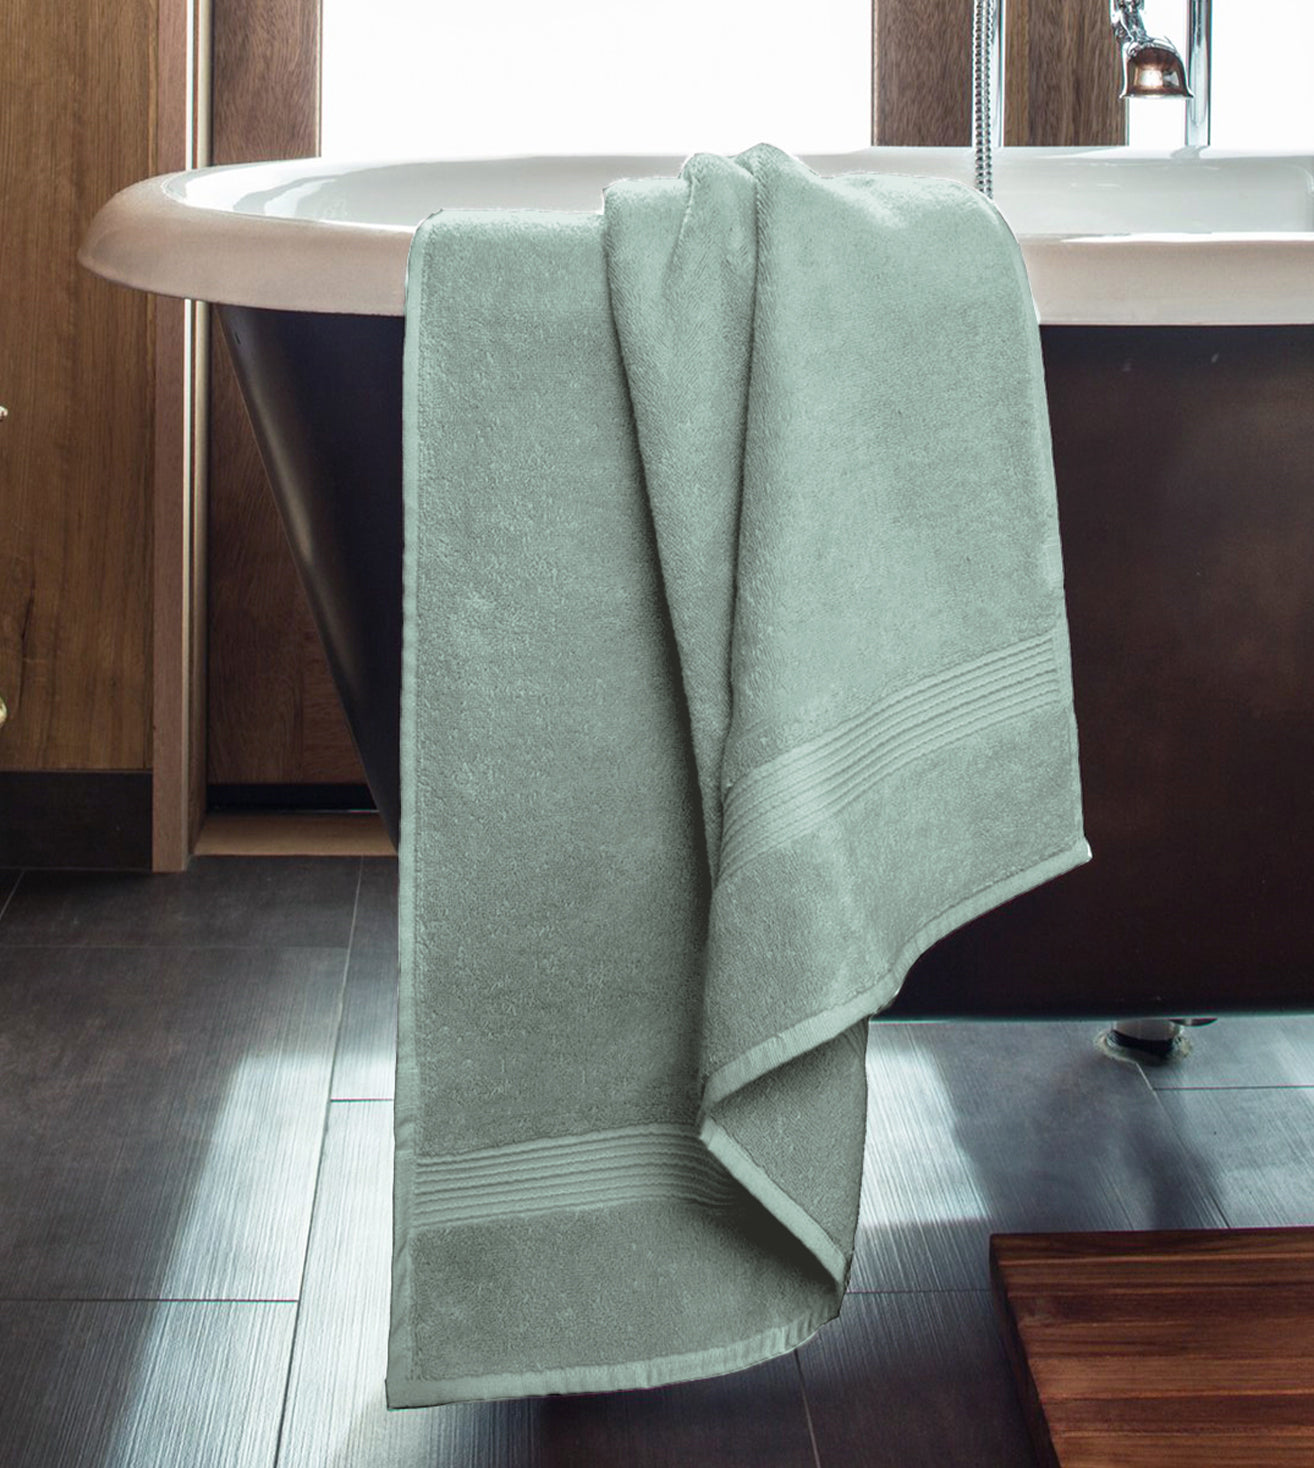 Serviette de bain 100 % coton biologique, ultra douce, luxueuse, 600 g/m² - Vert kaki